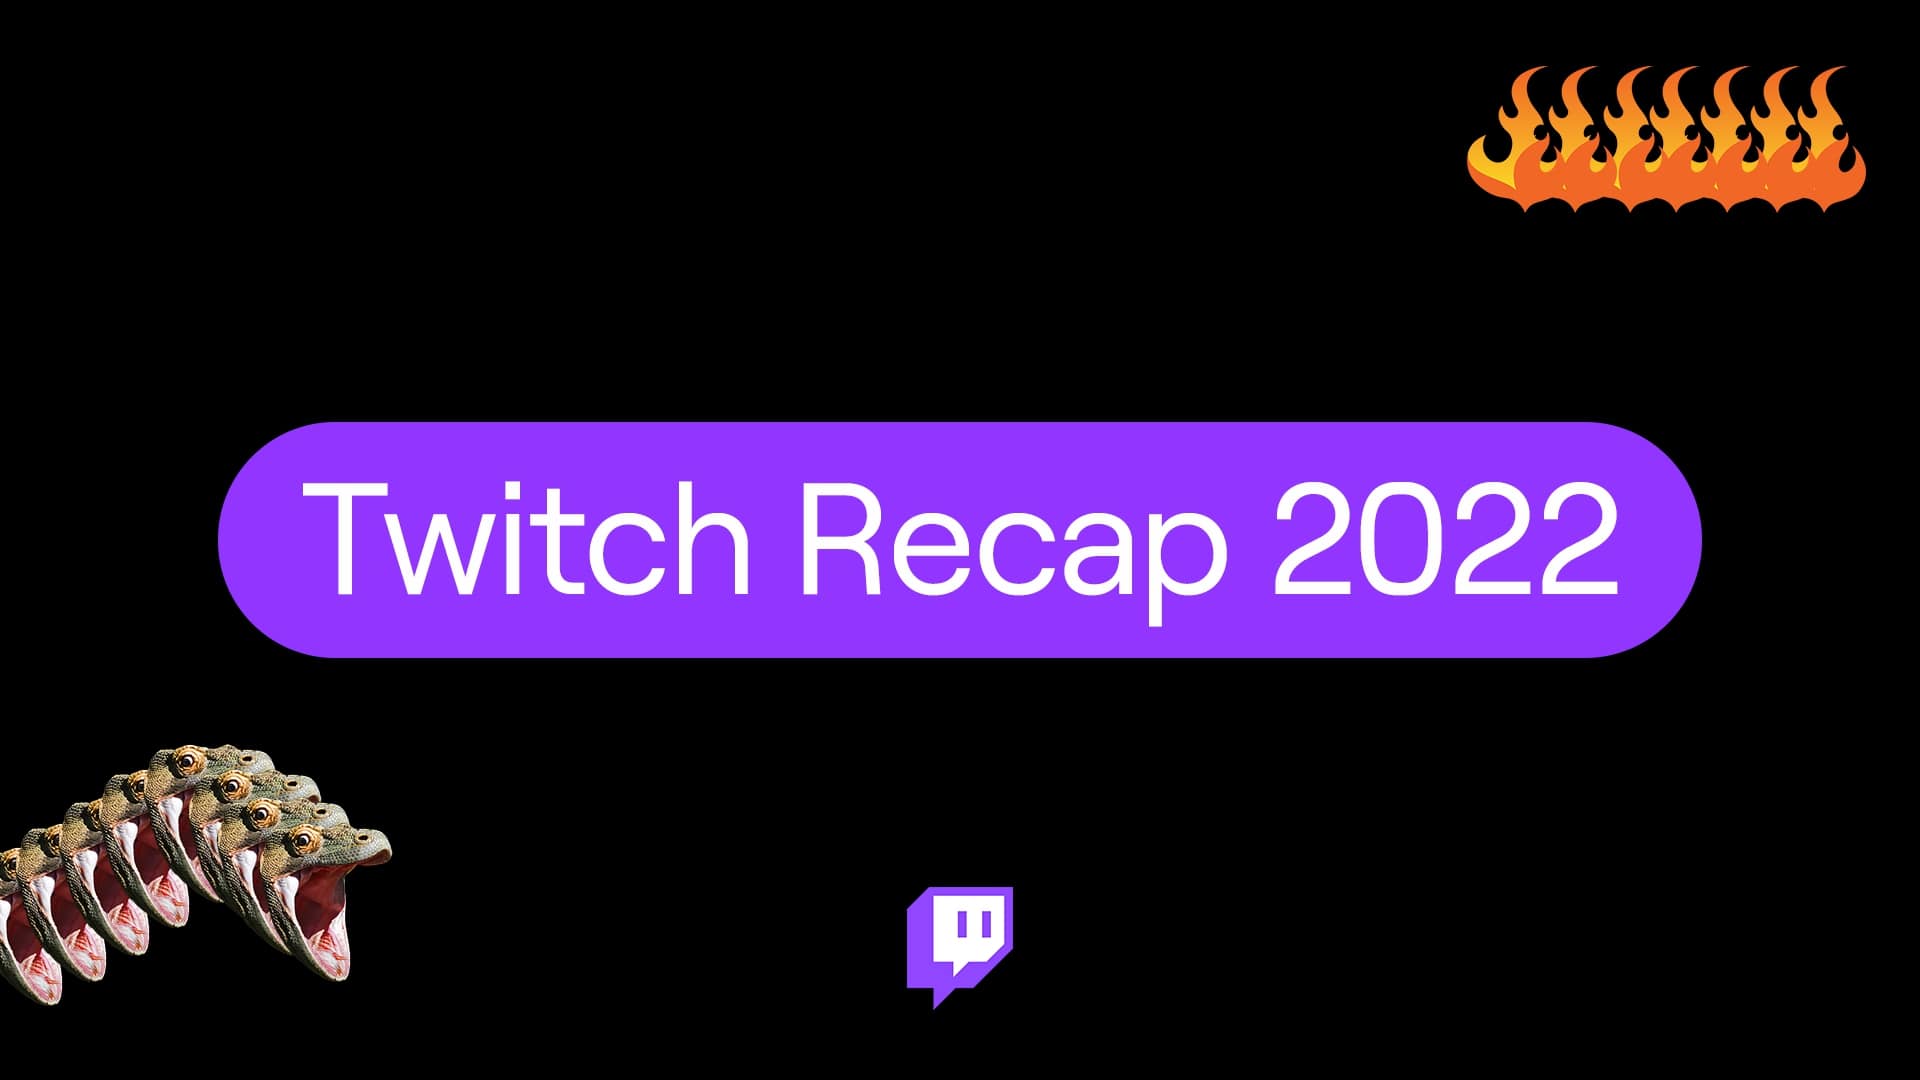 Twitch Recap 2022